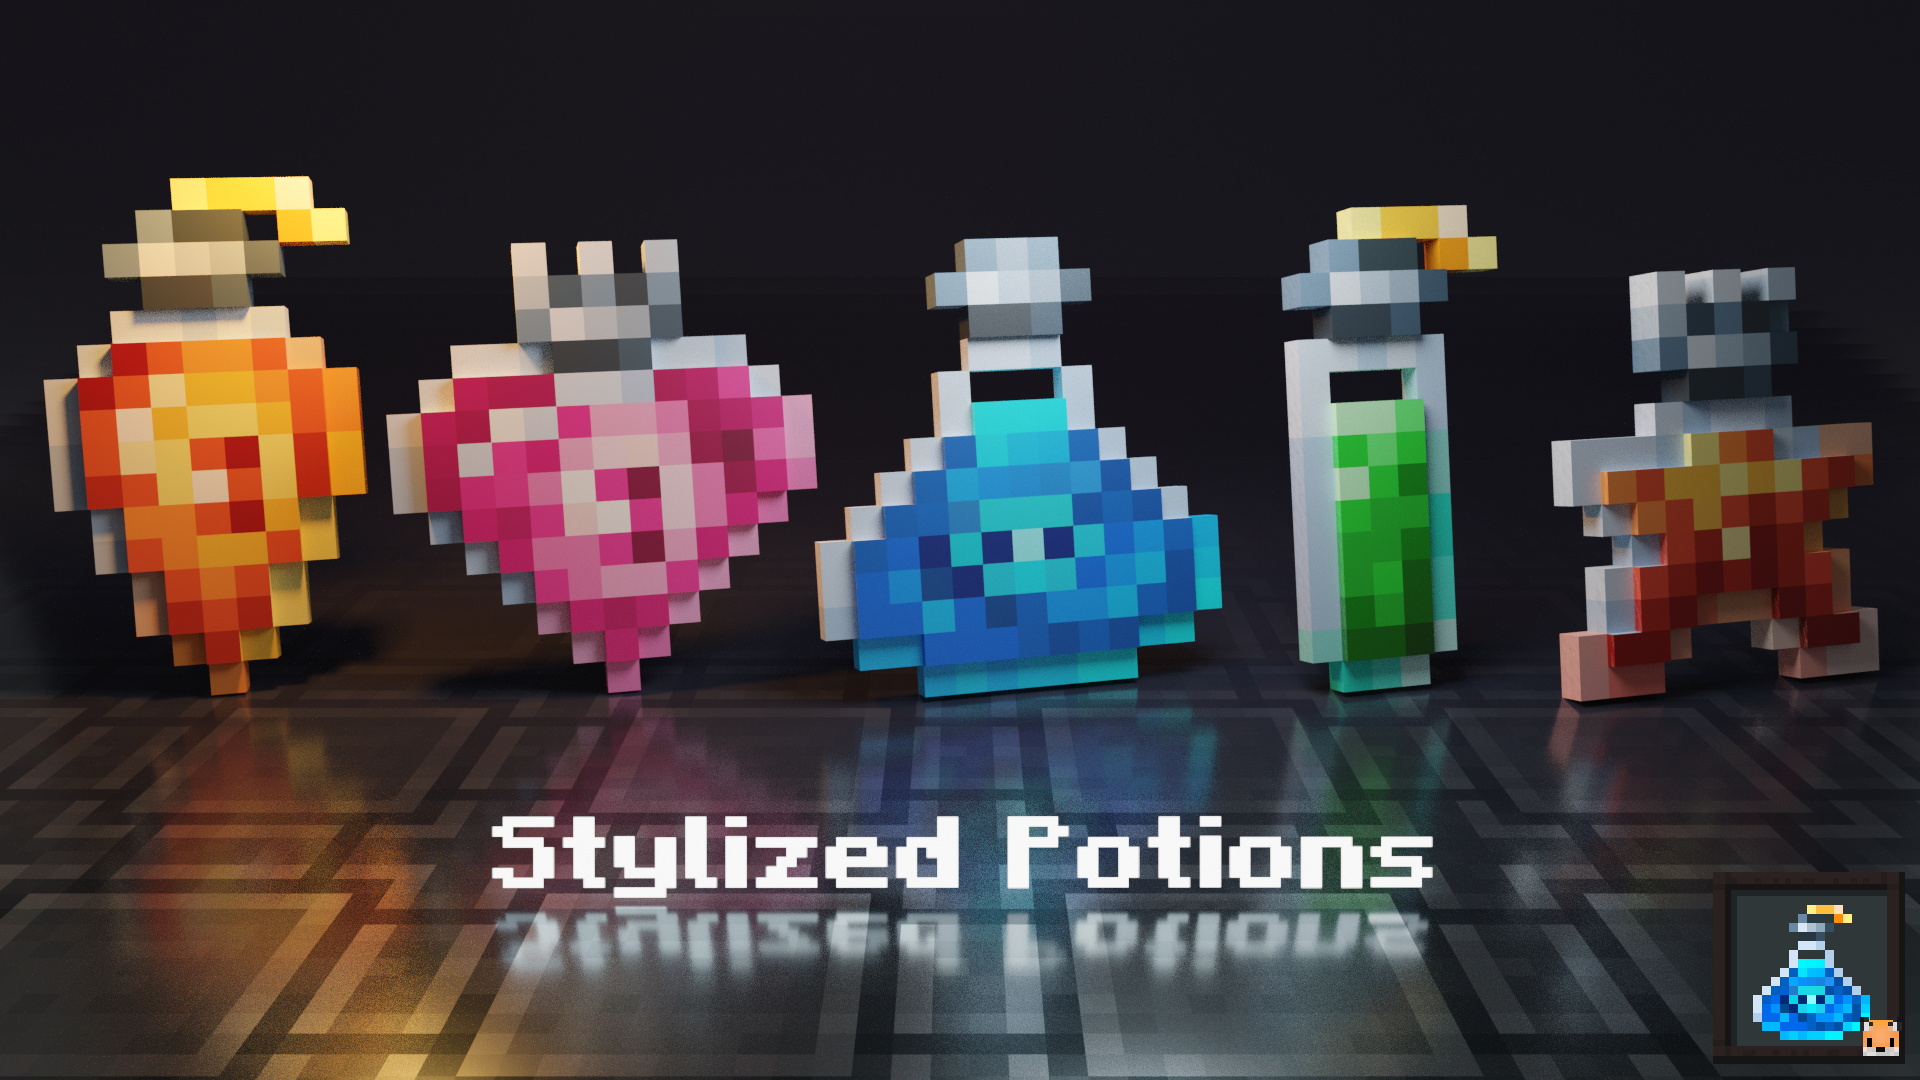 Stylized Potions screenshot 1